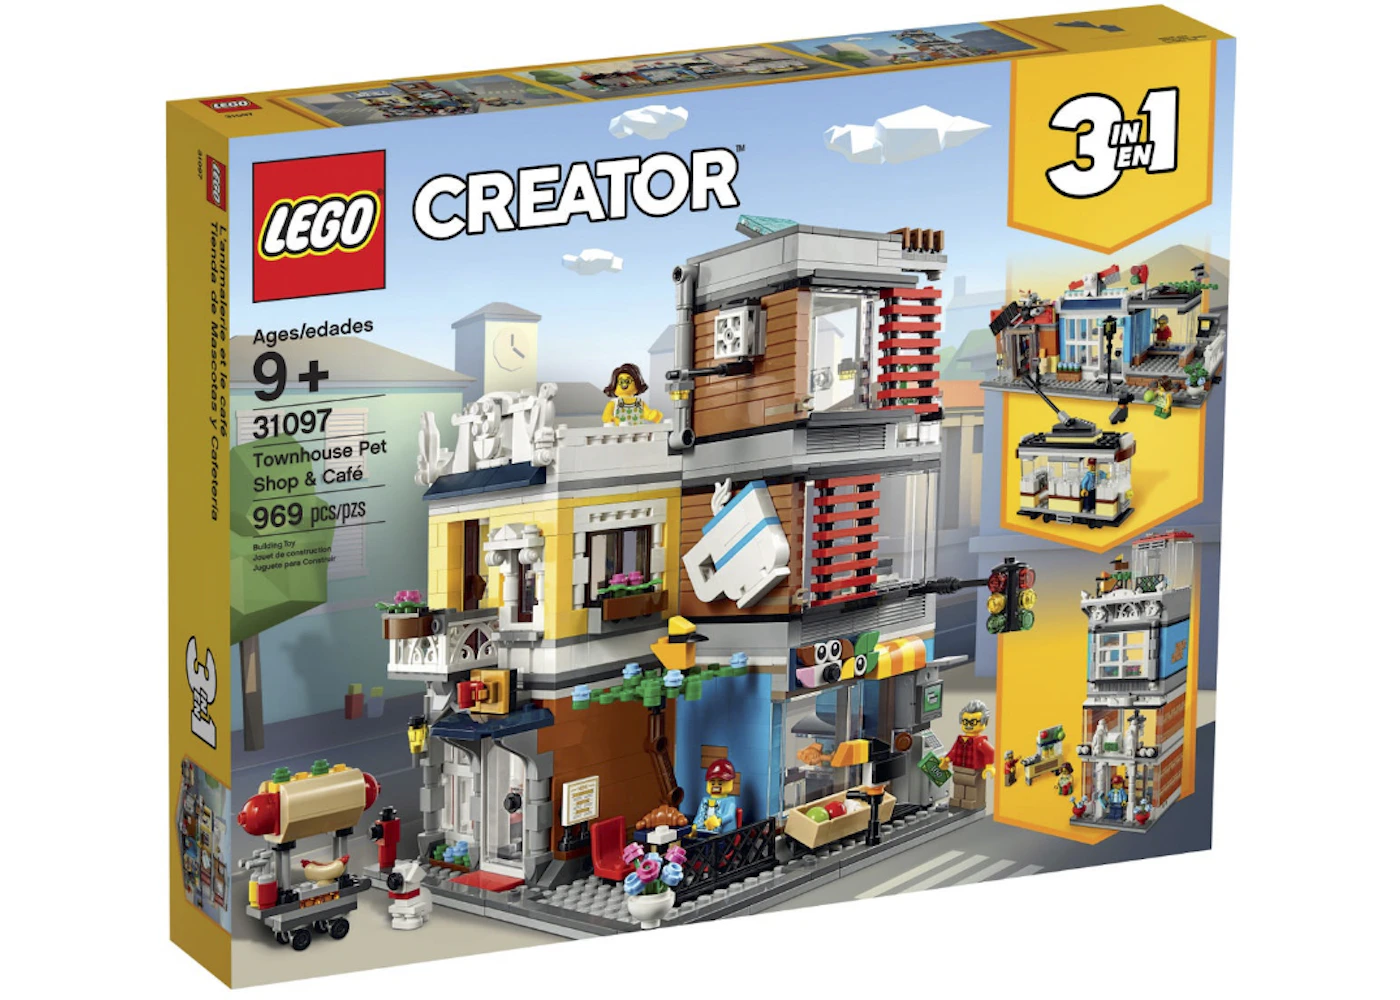 LEGO Creator Pet Shop & Cafe - US